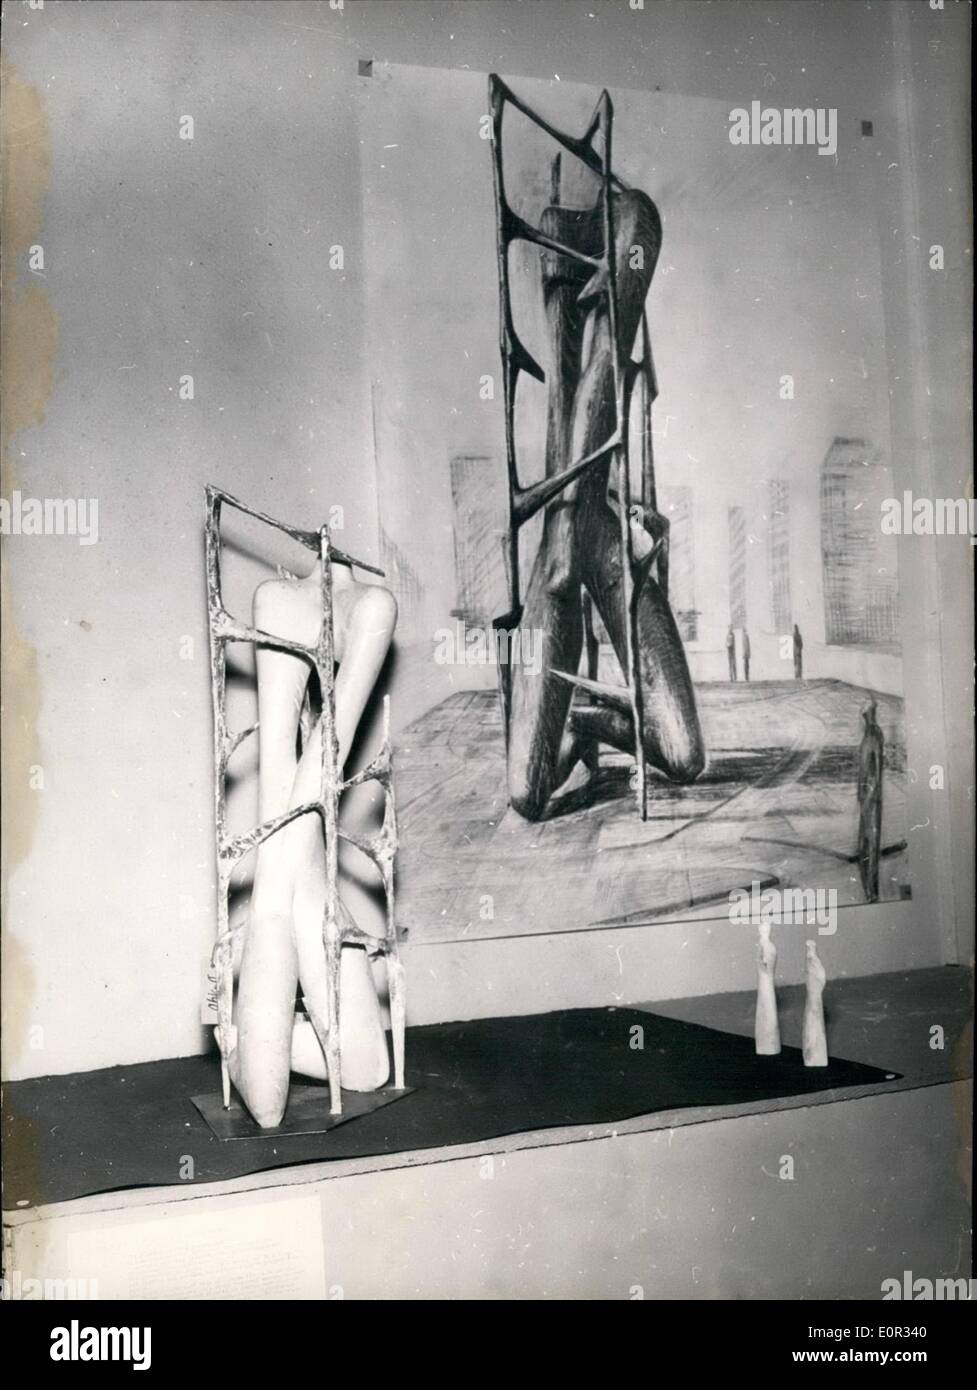 01 janvier, 1958 - L'Inconnu prisonnier politique l'Institute of Contemporary Arts de Londres a promulgué un concours pour un Banque D'Images